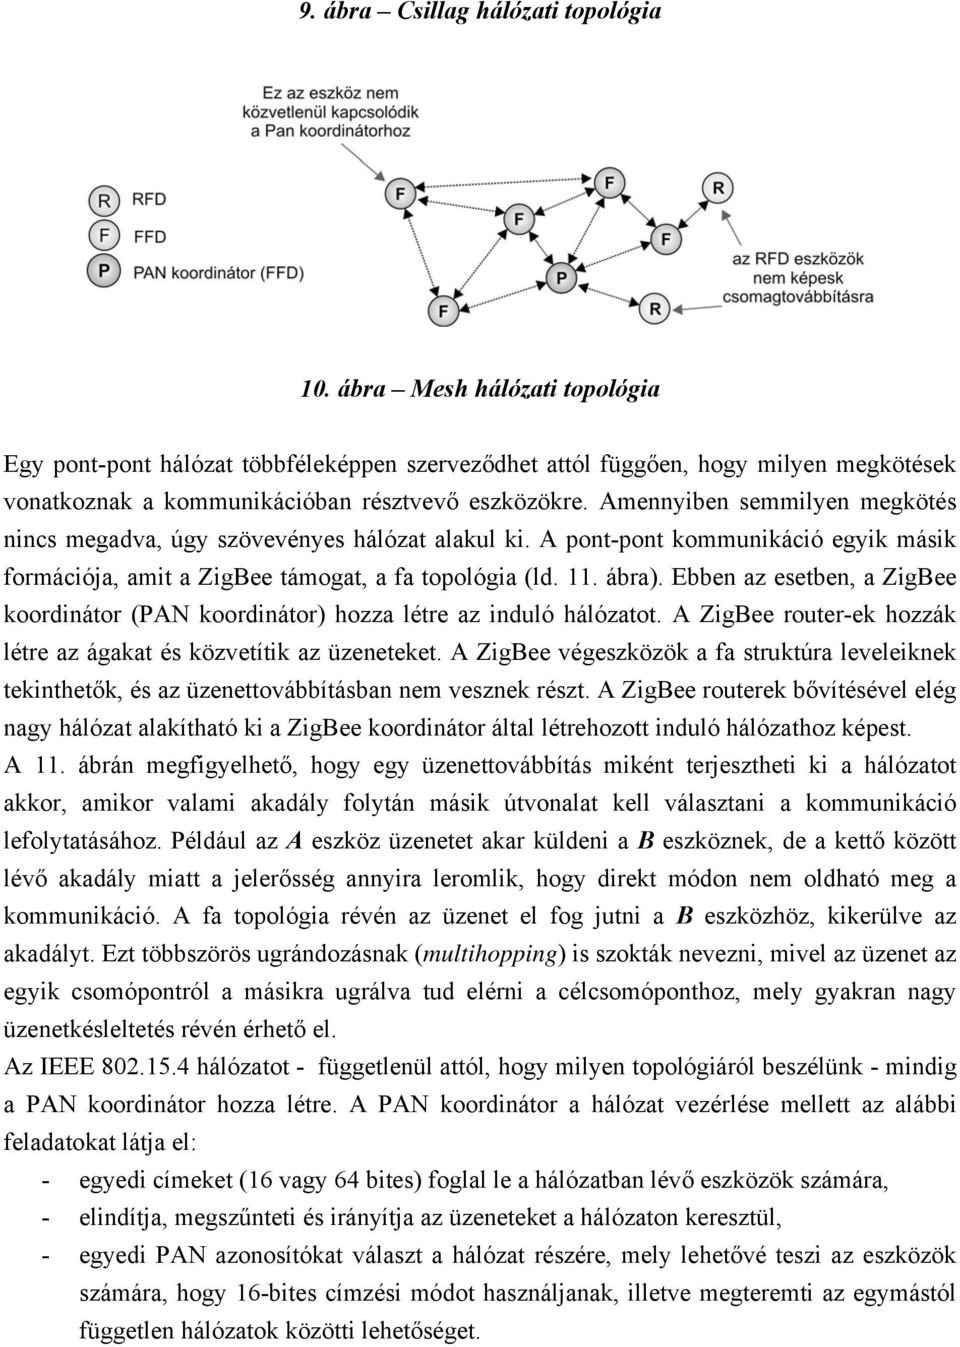 Amennyiben semmilyen megkötés nincs megadva, úgy szövevényes hálózat alakul ki. A pont-pont kommunikáció egyik másik formációja, amit a ZigBee támogat, a fa topológia (ld. 11. ábra).